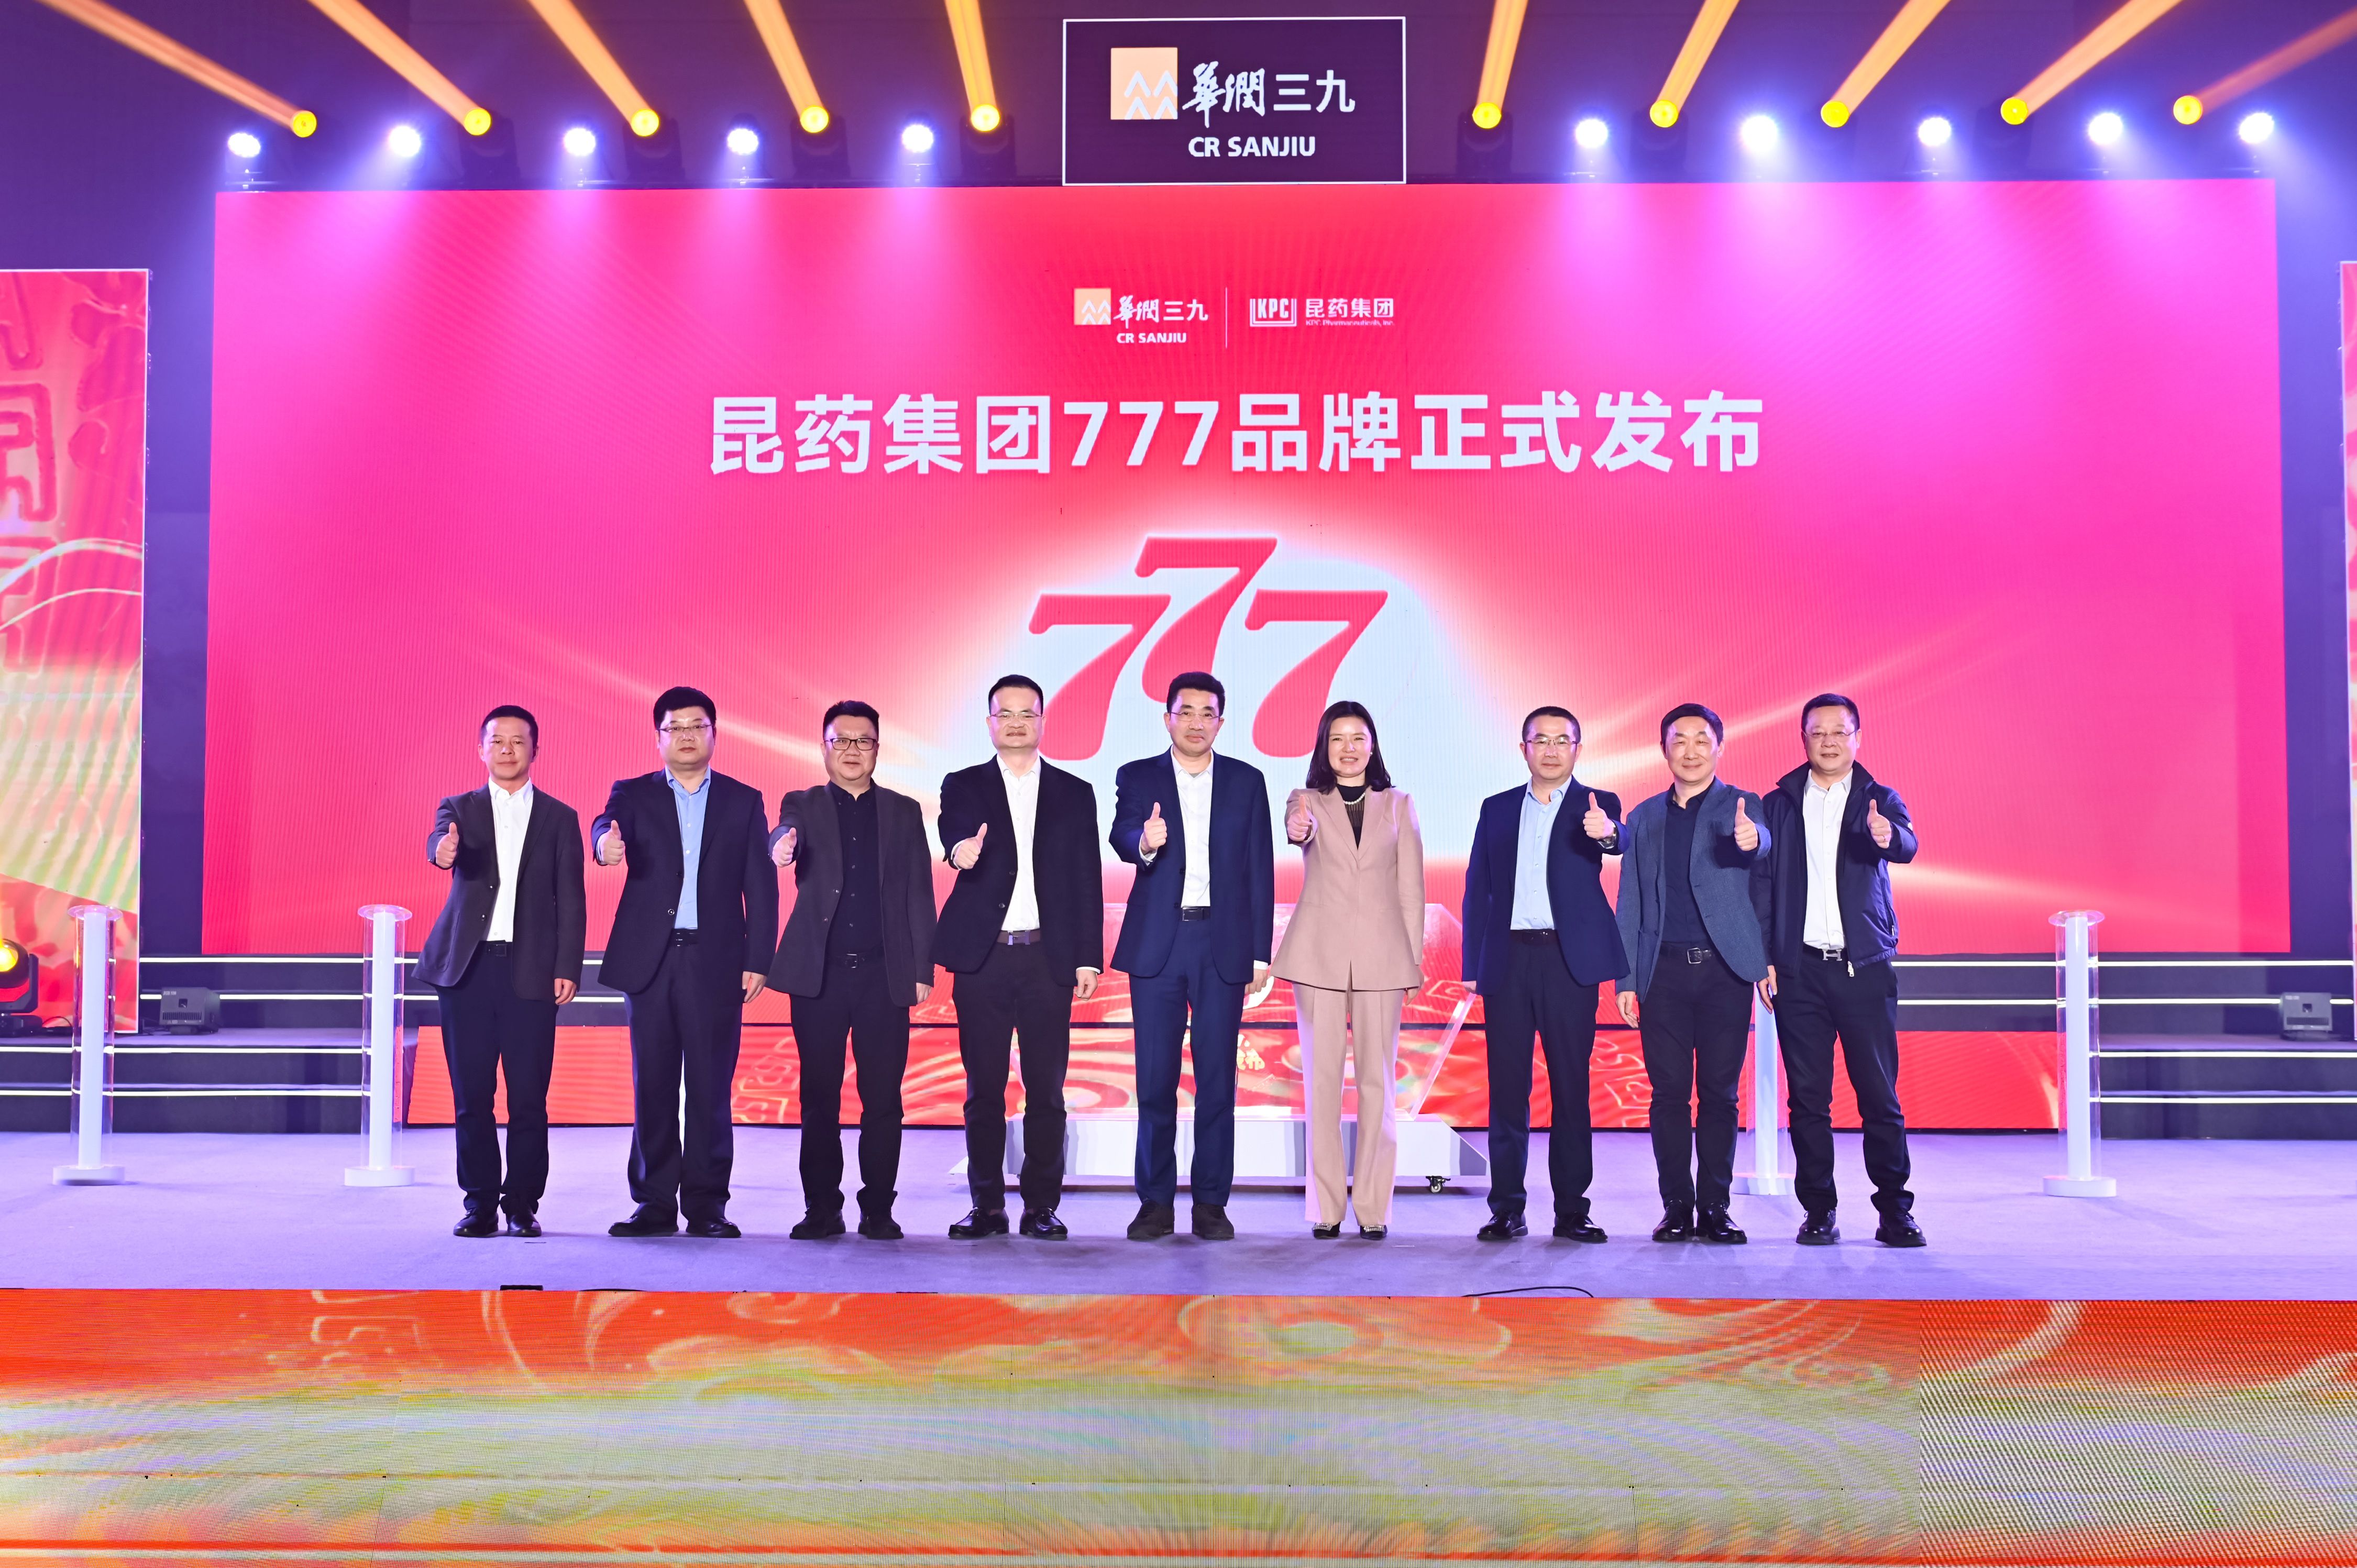 华润三九旗下昆药集团正式发布“777”品牌